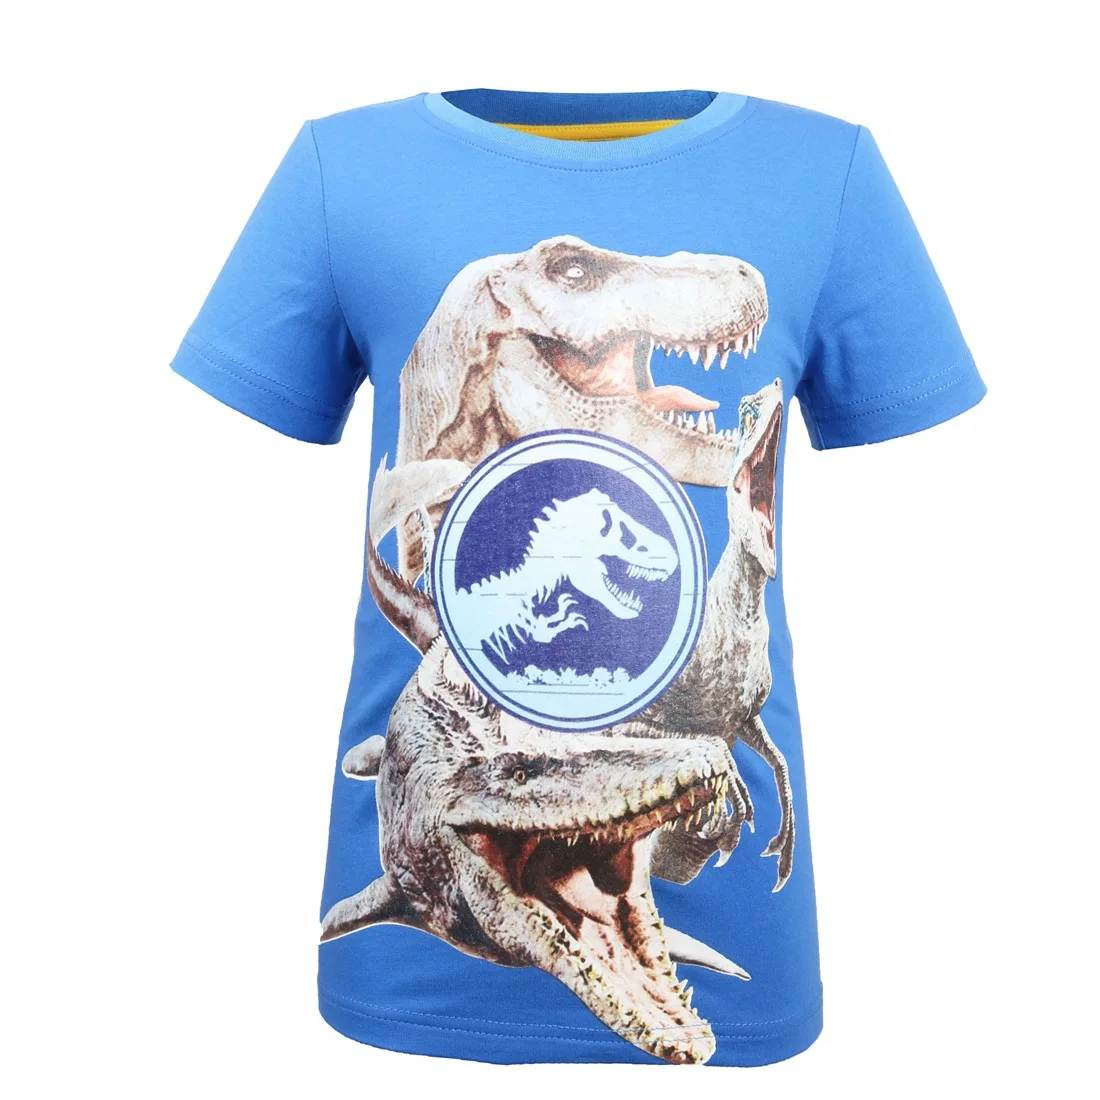 Новый 2018 из фильма «Парк Юрского периода»; 2 динозавра детские короткие футболки футболка летние футболки для мальчиков-подростков с